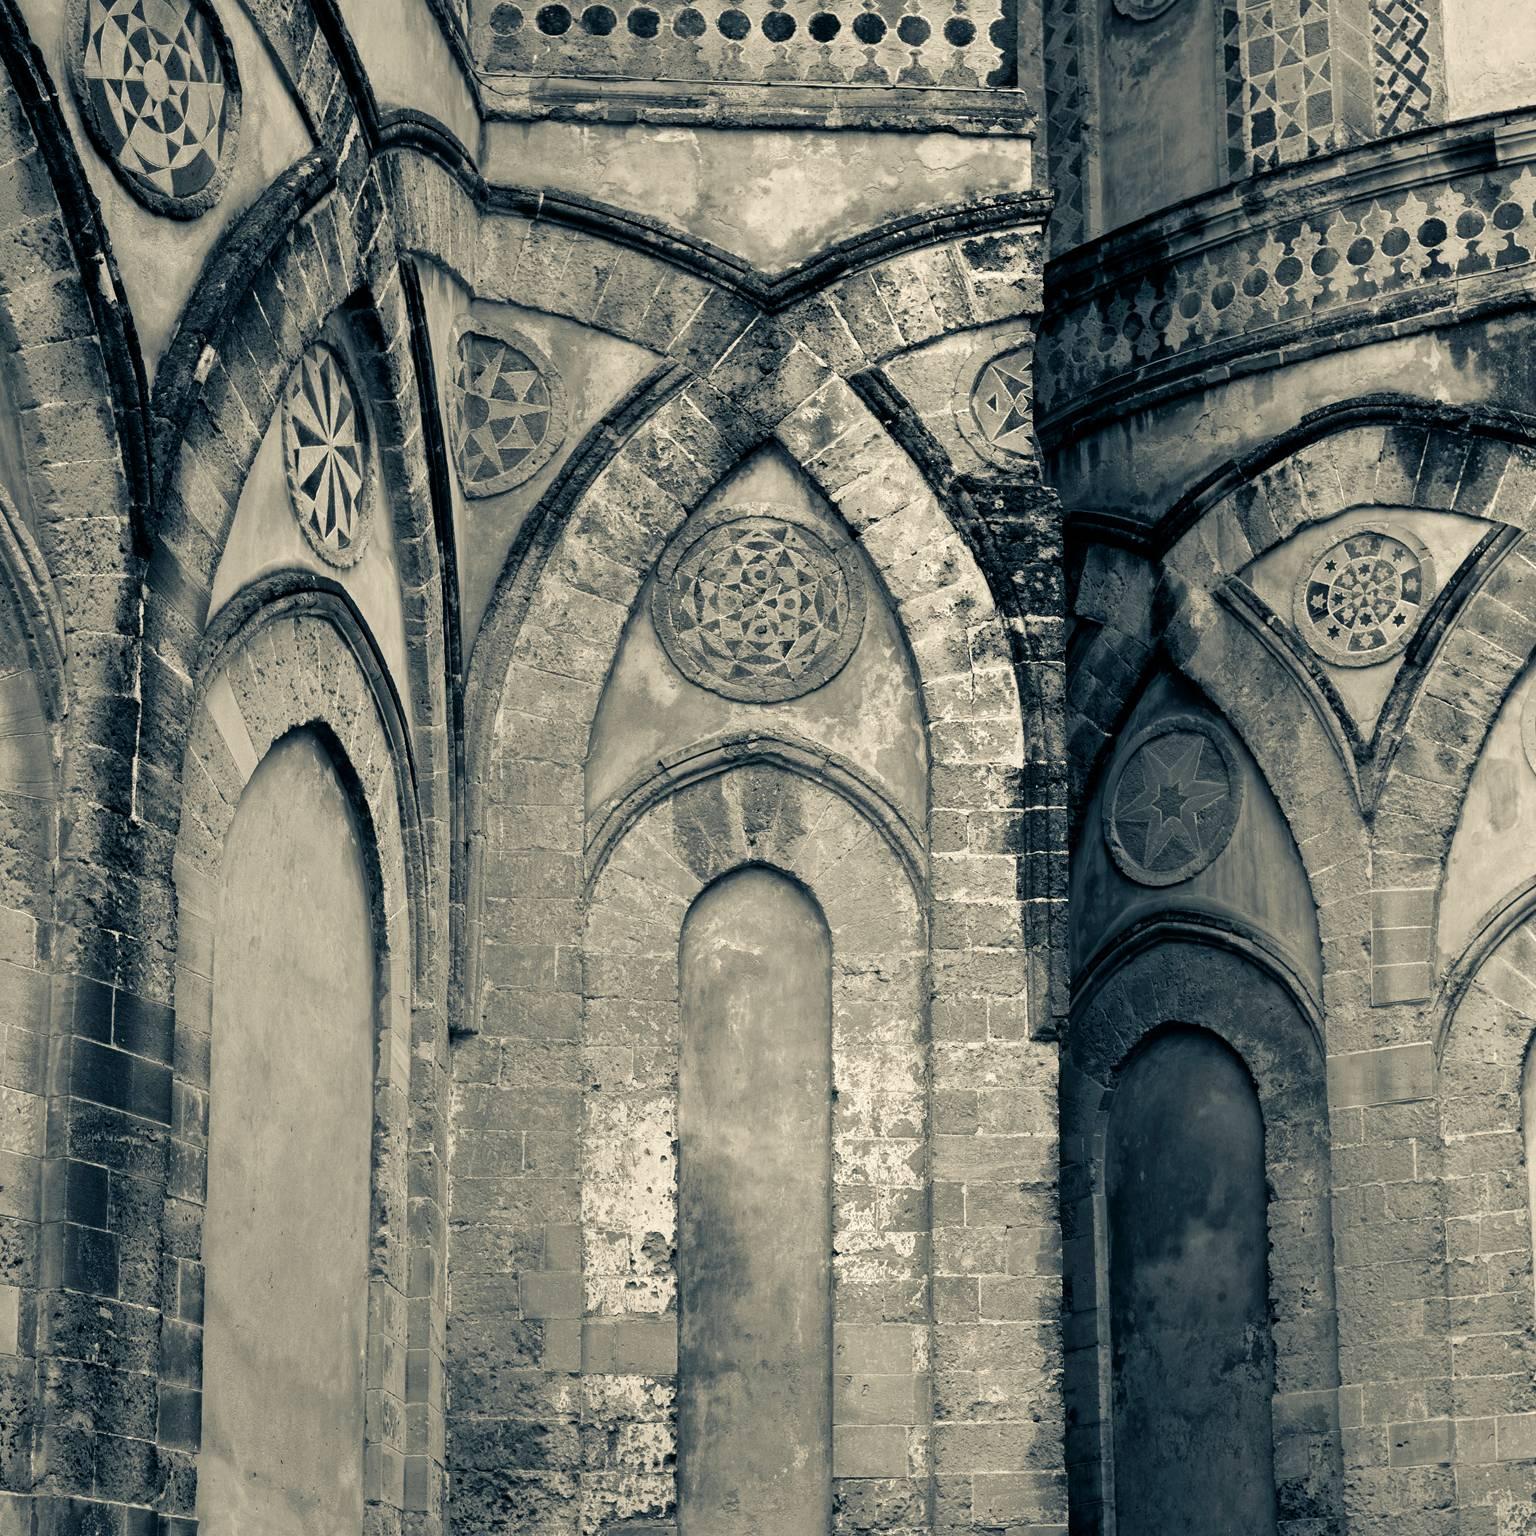 Cattedrale di Monreale, Version 2 - Photograph by Massimo Di Lorenzo